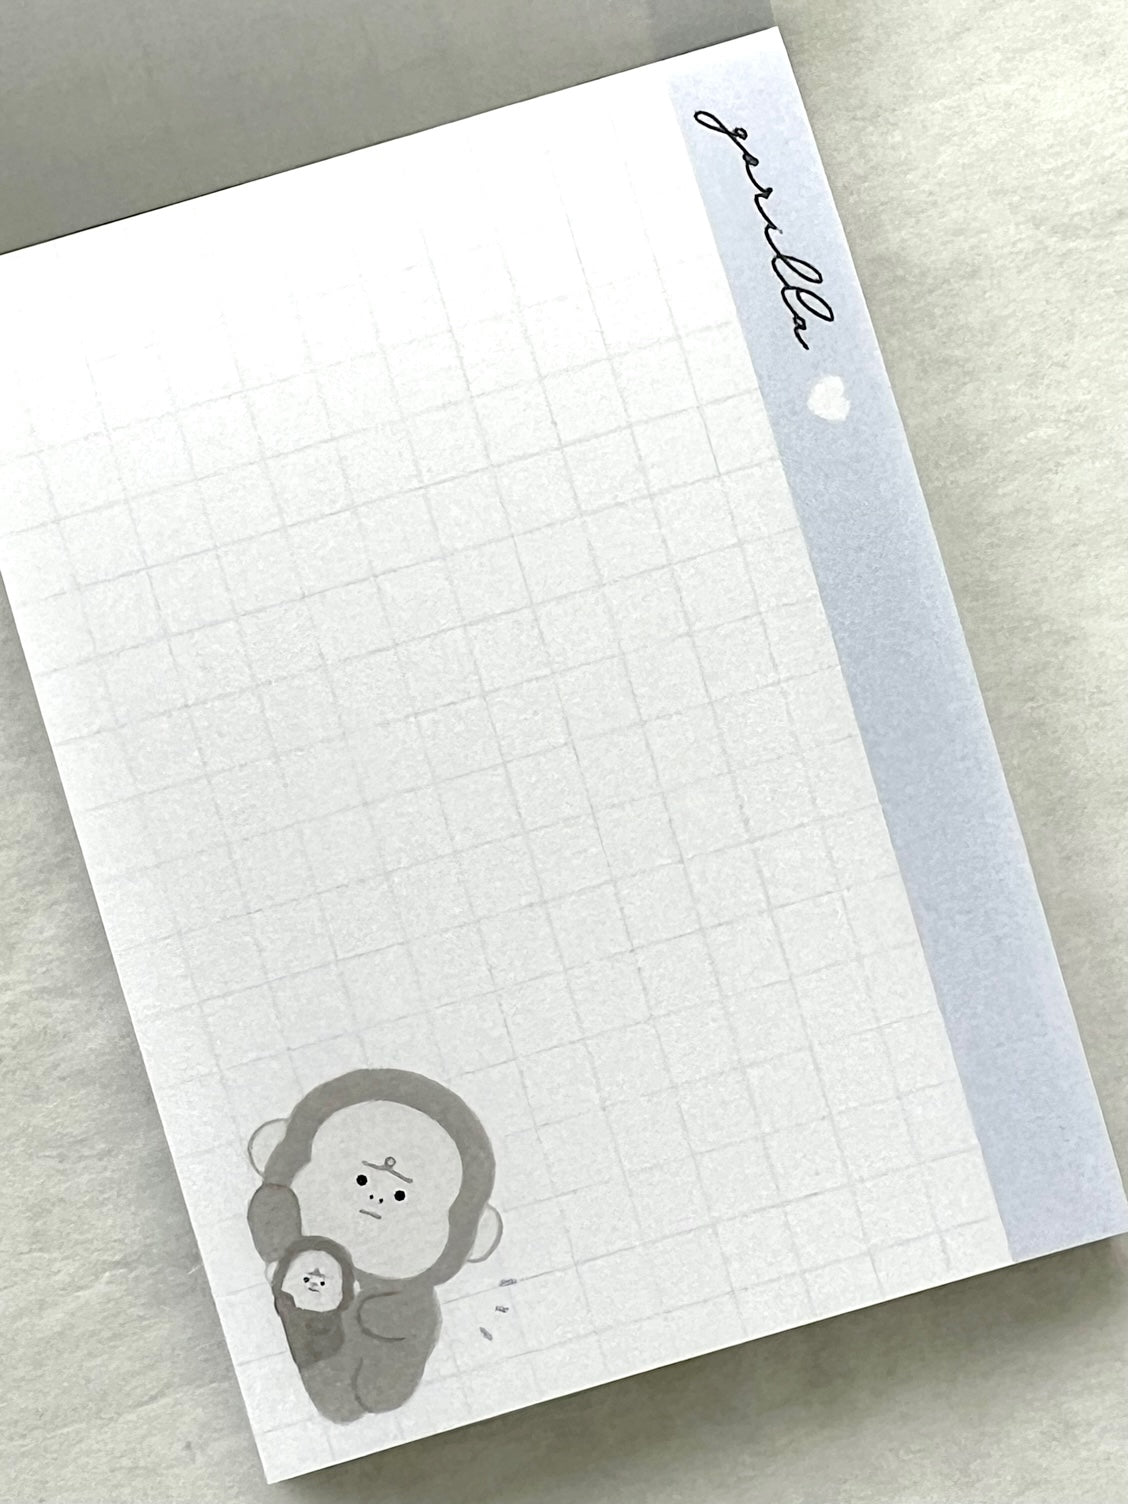 210860 Kamio Gorilla Mini Notepad-10